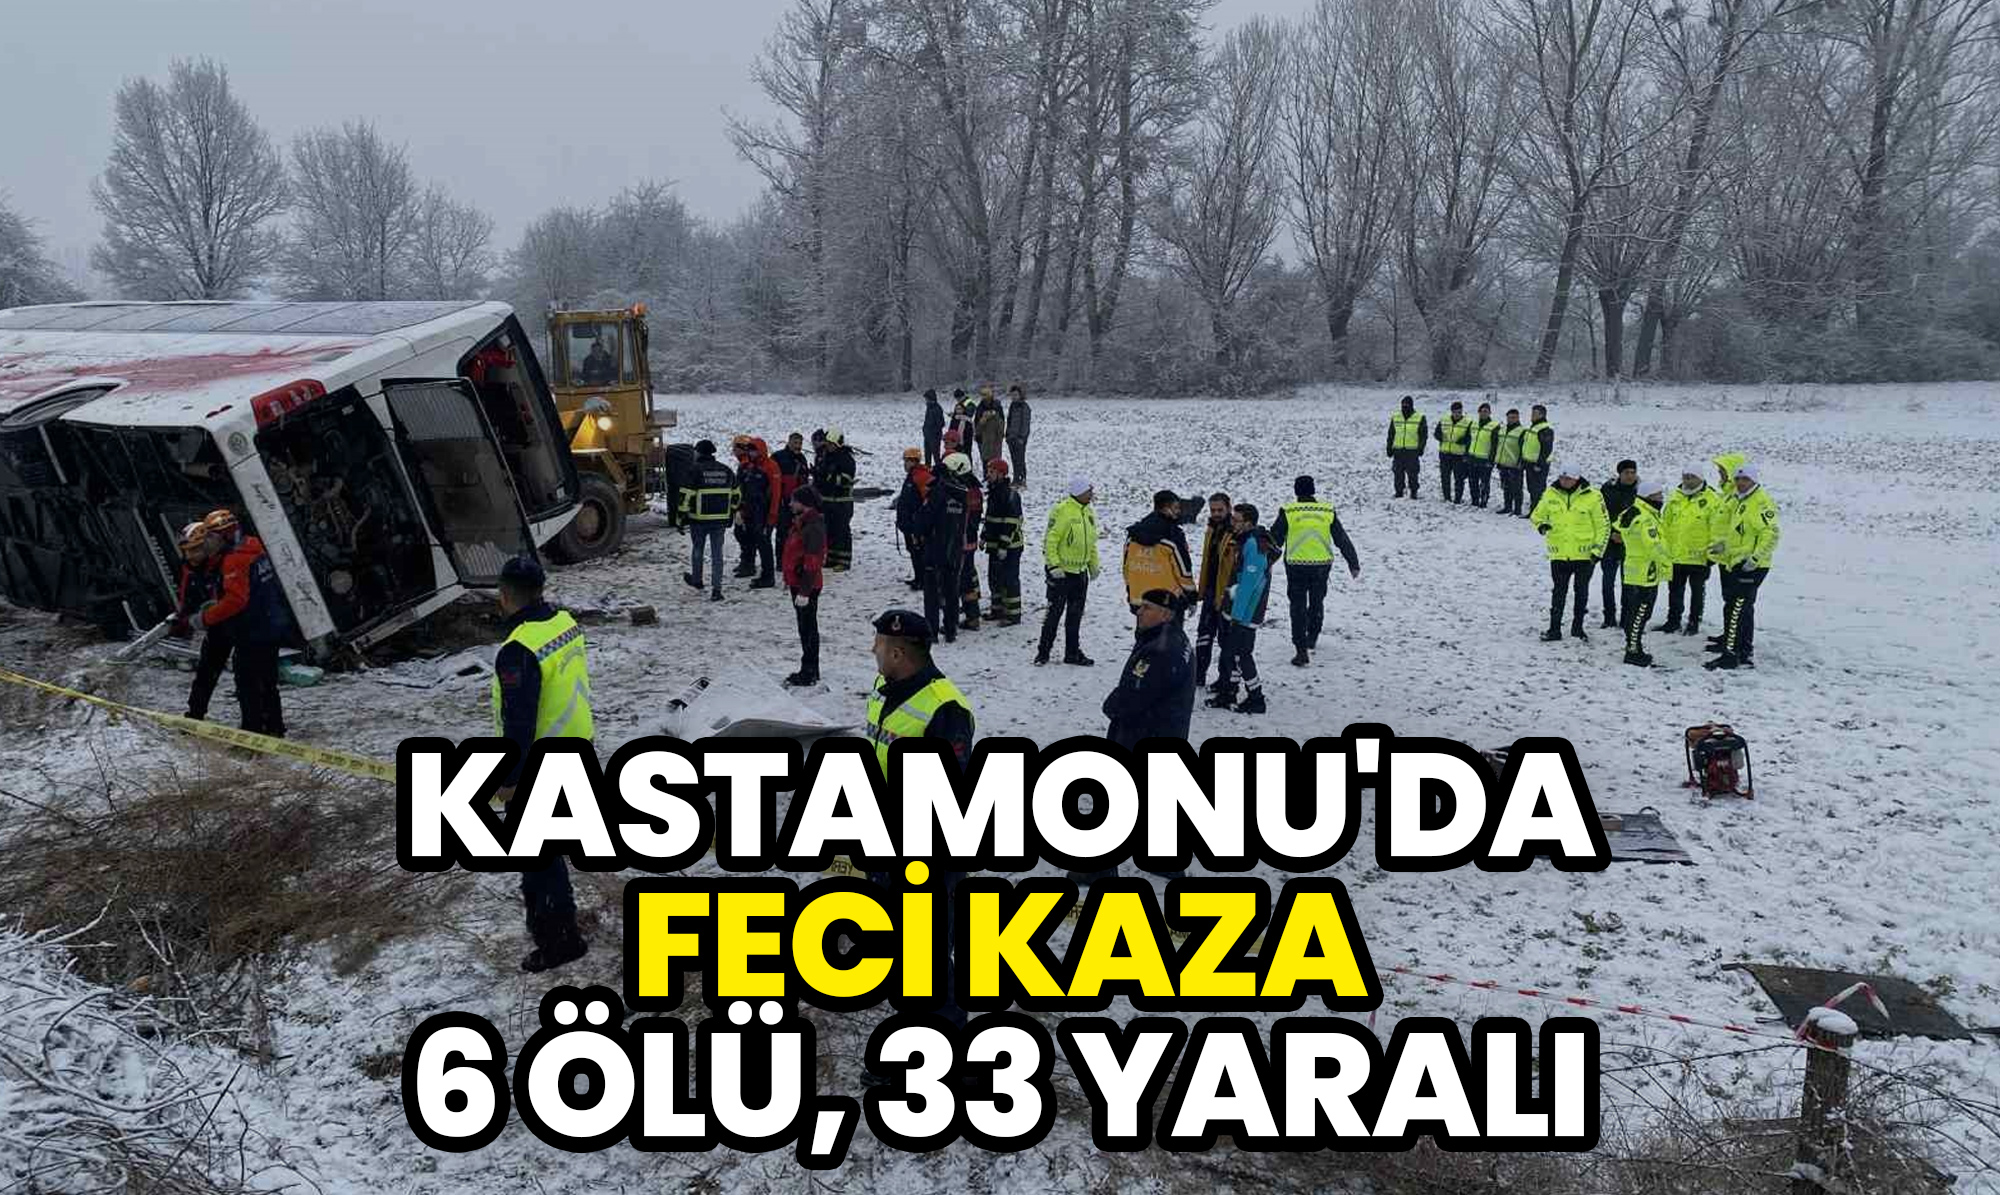 Kastamonu'da feci kaza: 6 kişi öldü, 33 kişi yaralandı!